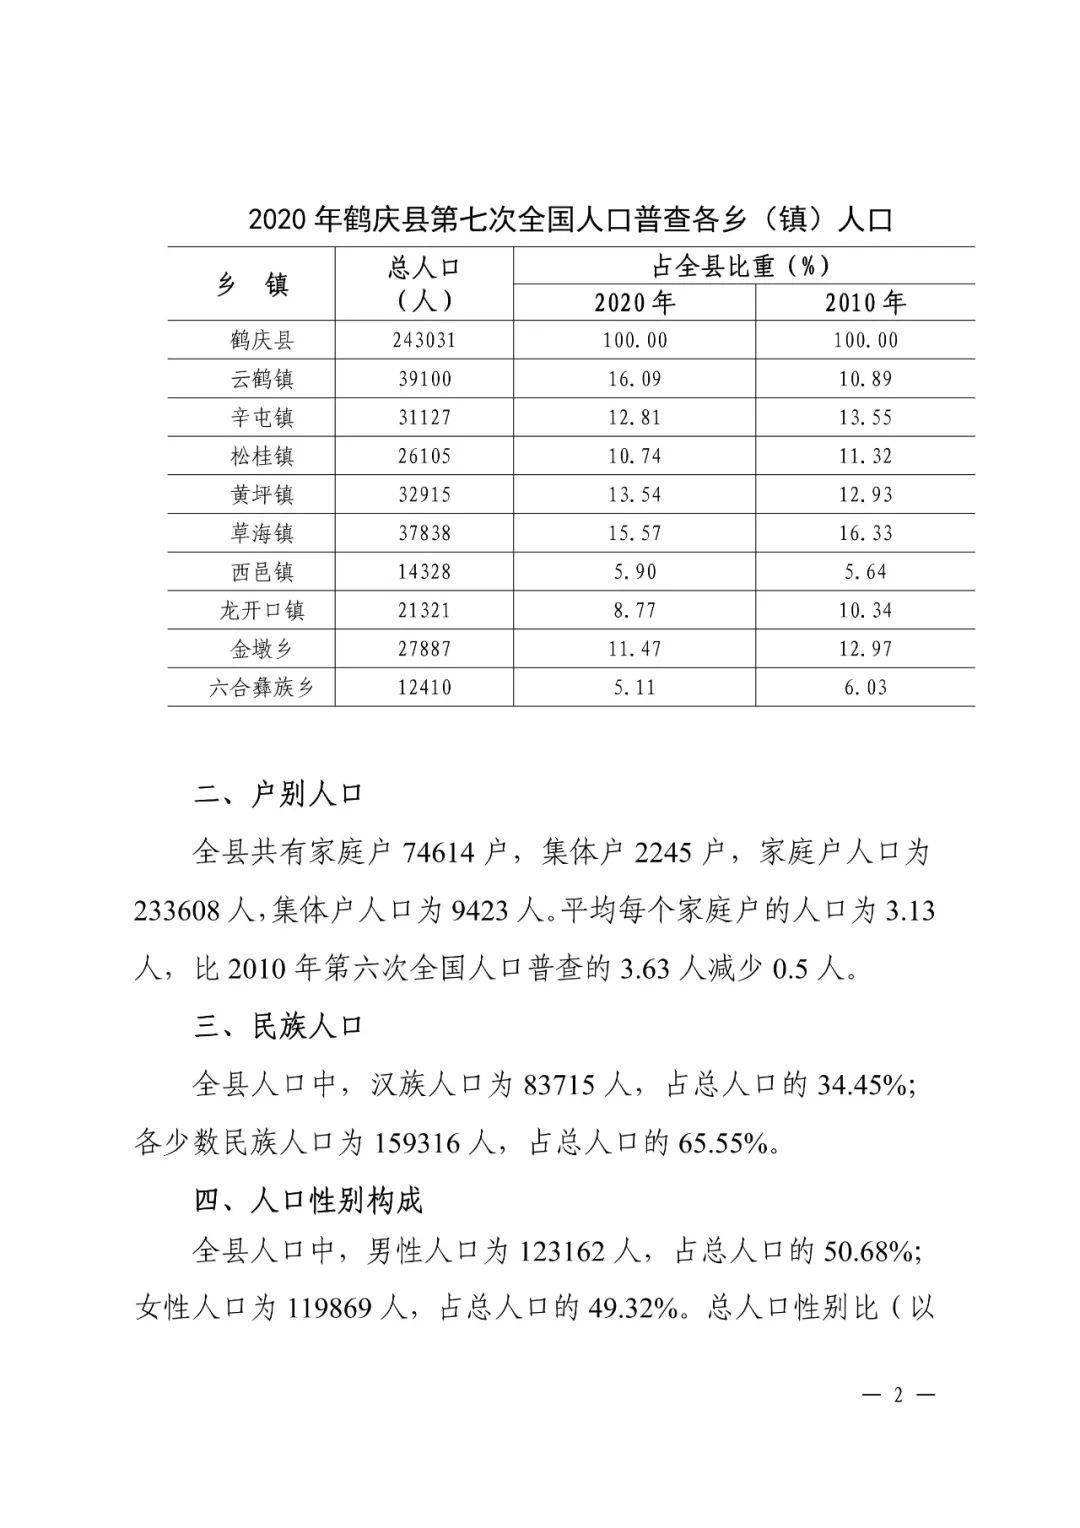 鹤庆县第七次全国人口普查主要数据公报